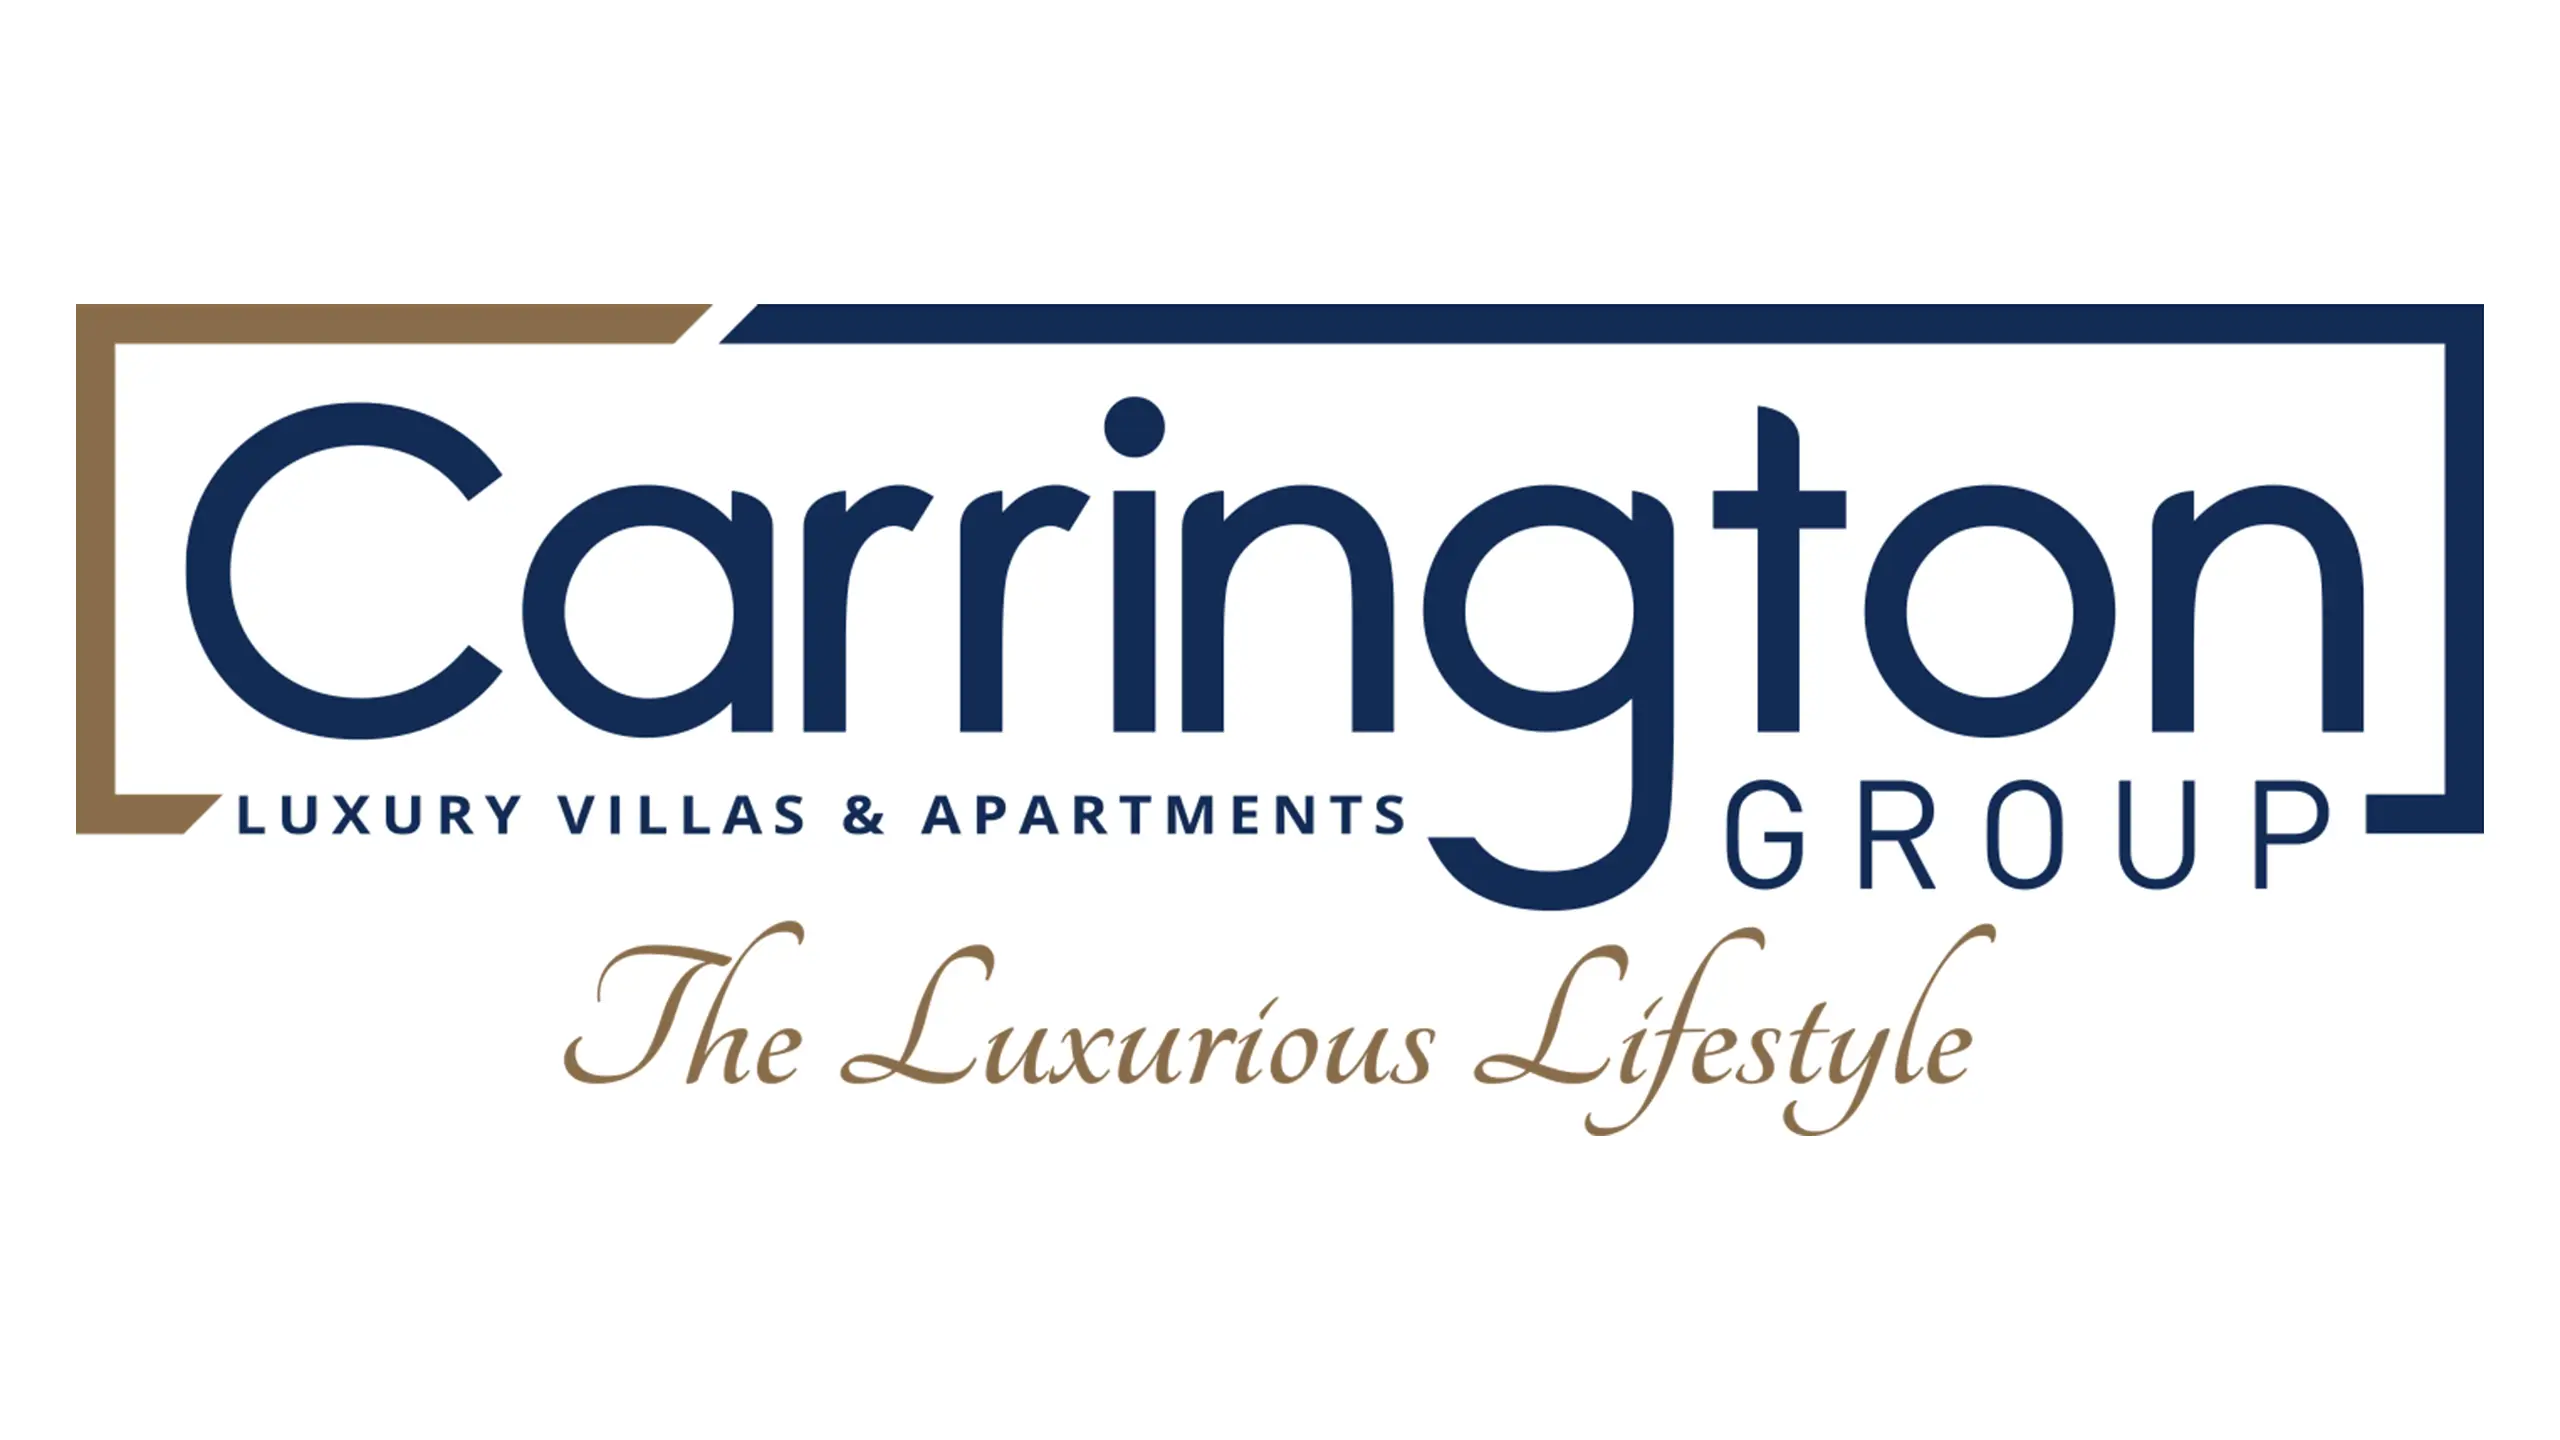 Carrington Group Logo